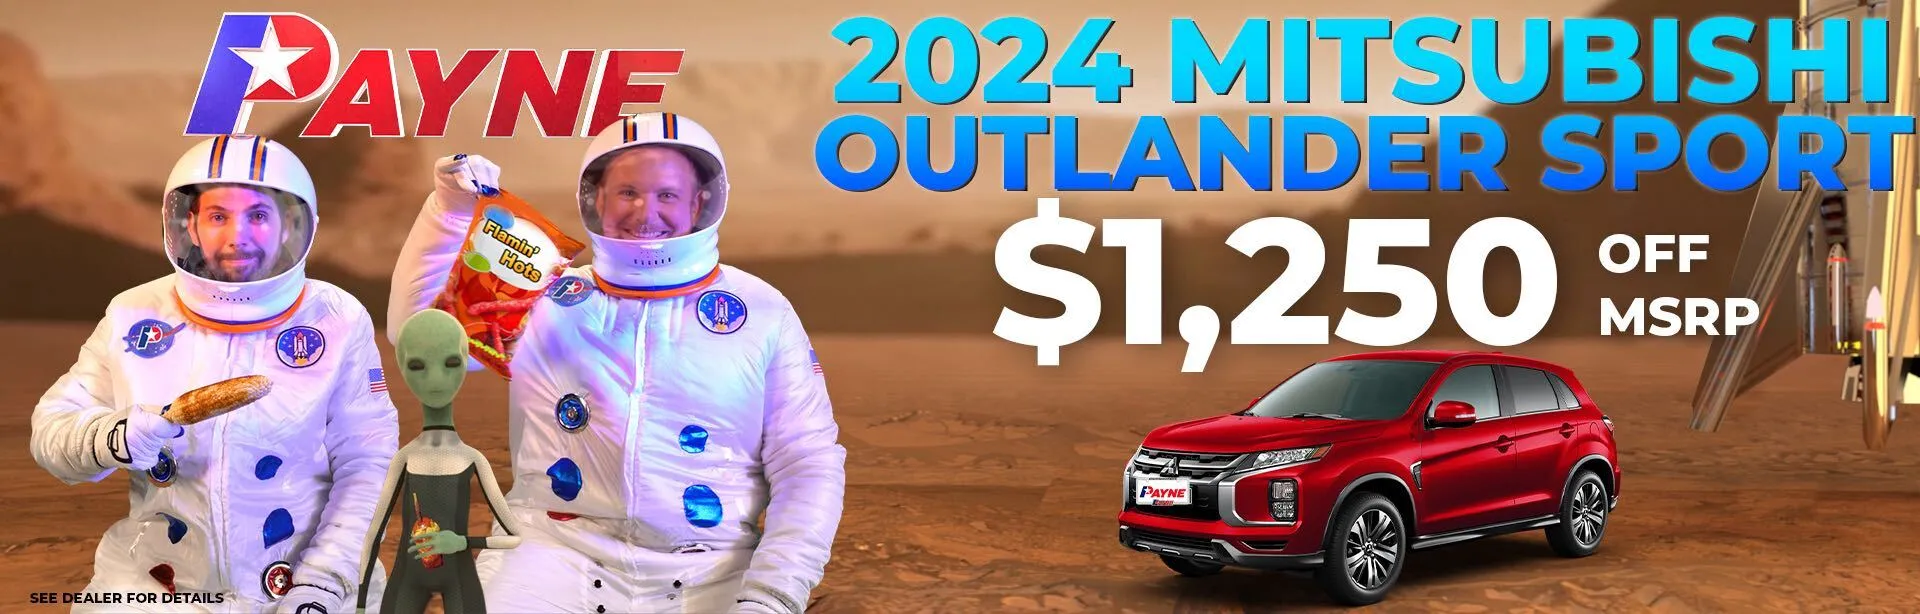 Get $1,250 off a 2024 Mitsubishi Mitsubishi Outlander Sport! 